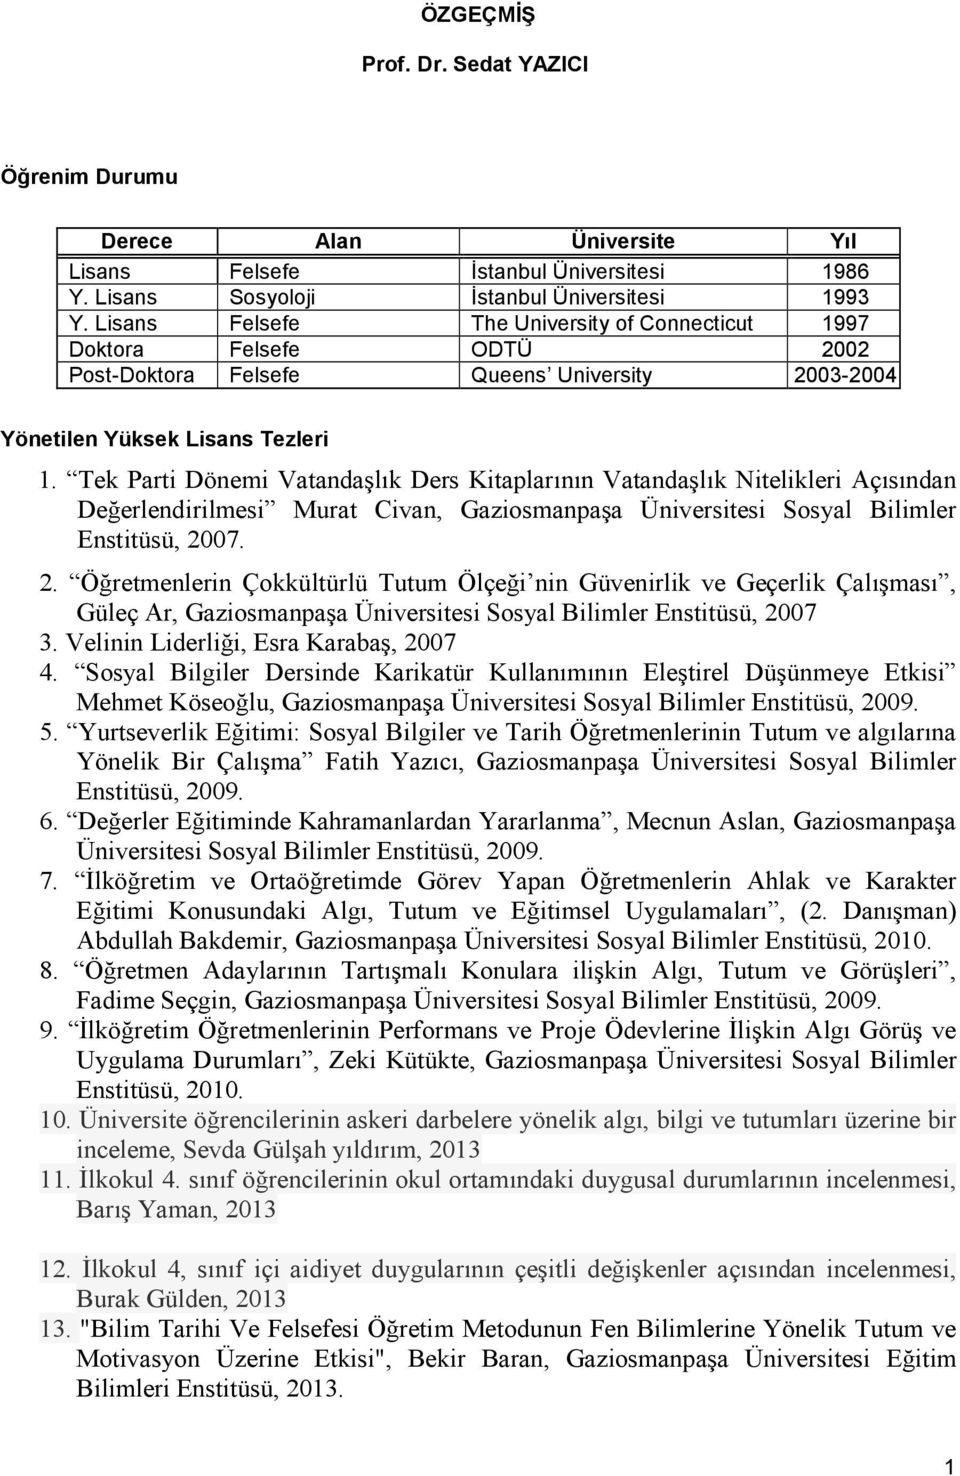 ÖZGEÇMİŞ. Prof. Dr. Sedat YAZICI - PDF Ücretsiz indirin